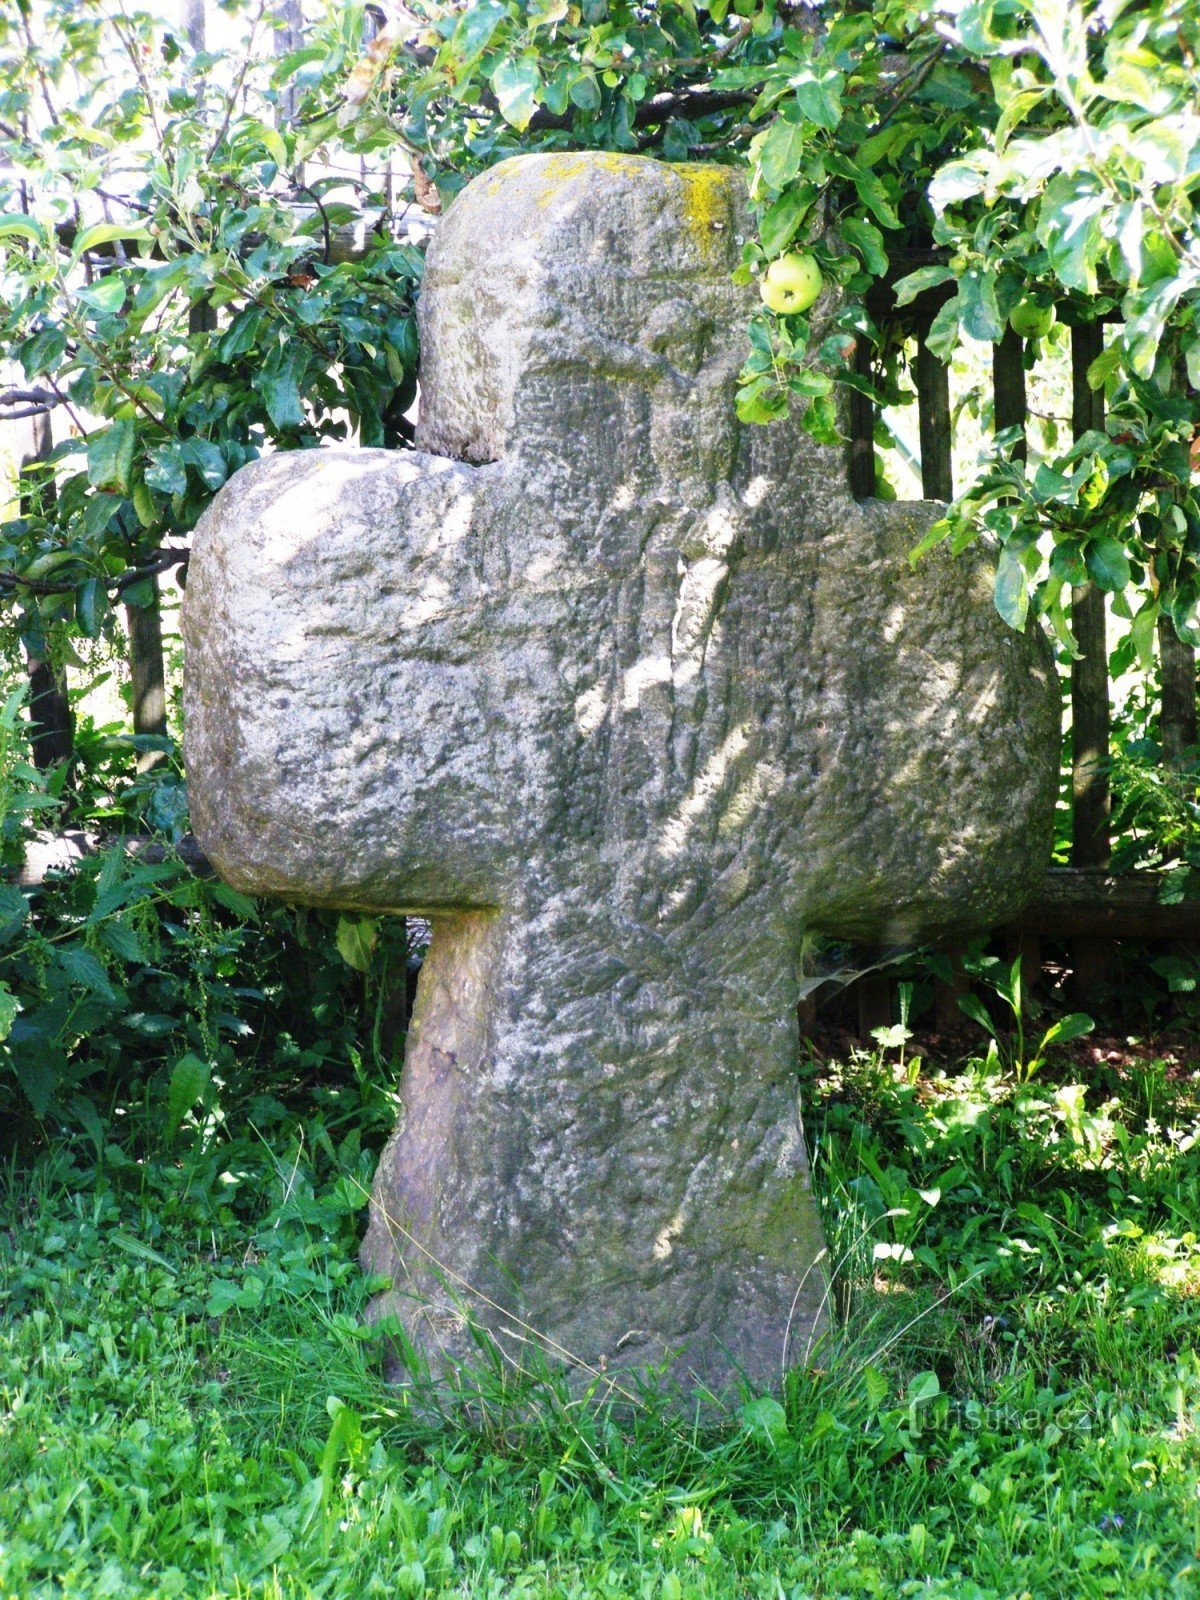 Přibyslav (JC) - smírčí kříž